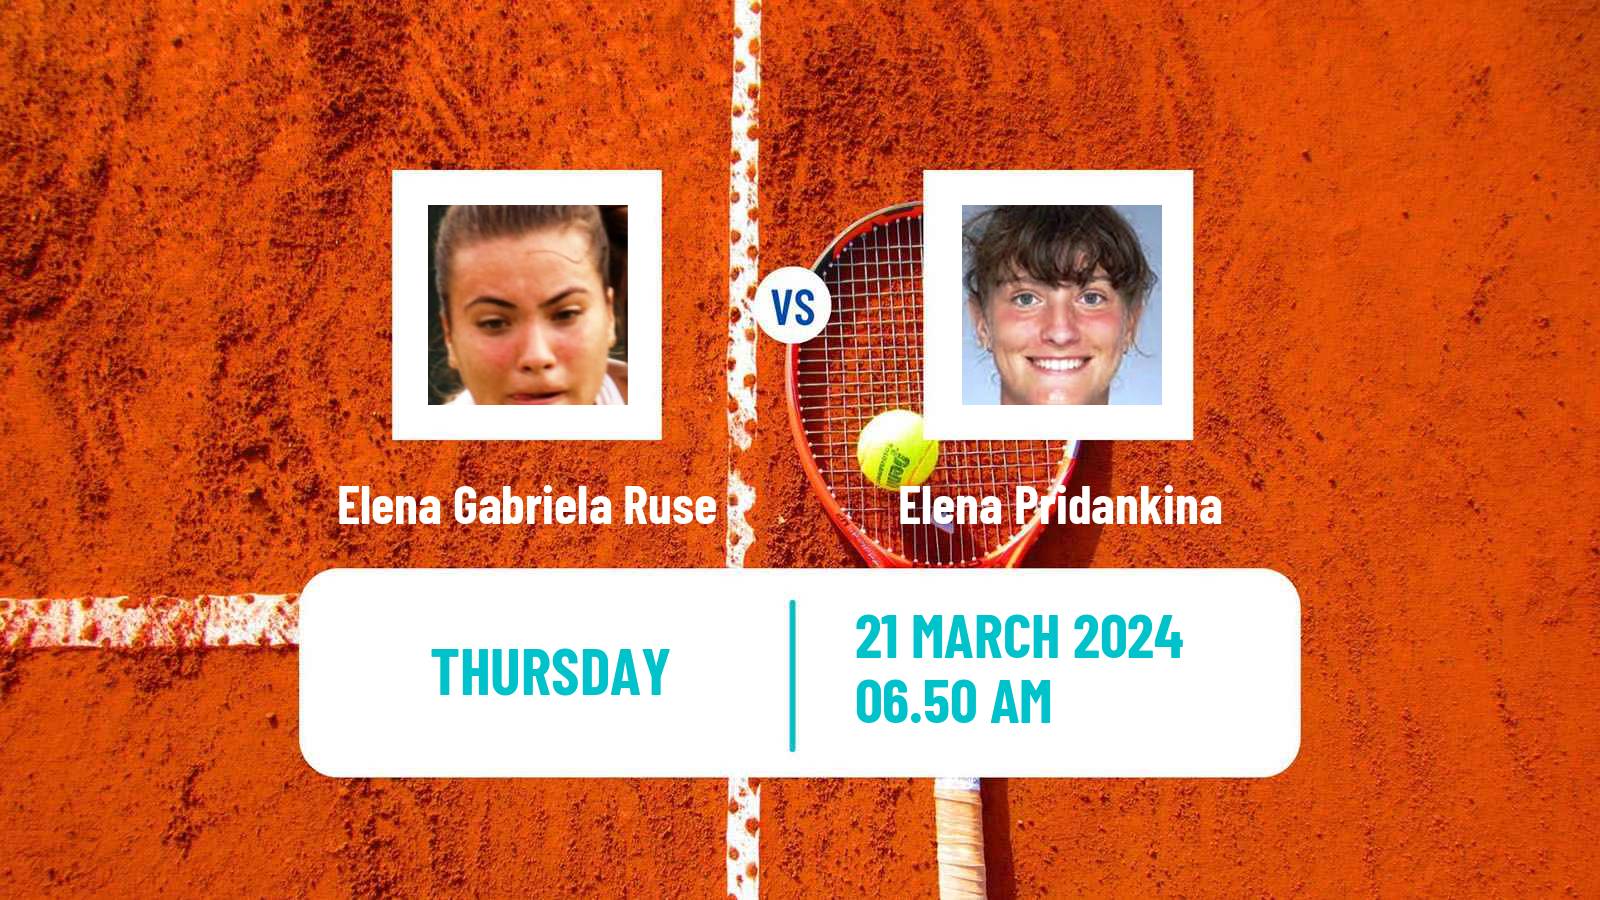 Tennis ITF W75 MarIBOr Women Elena Gabriela Ruse - Elena Pridankina